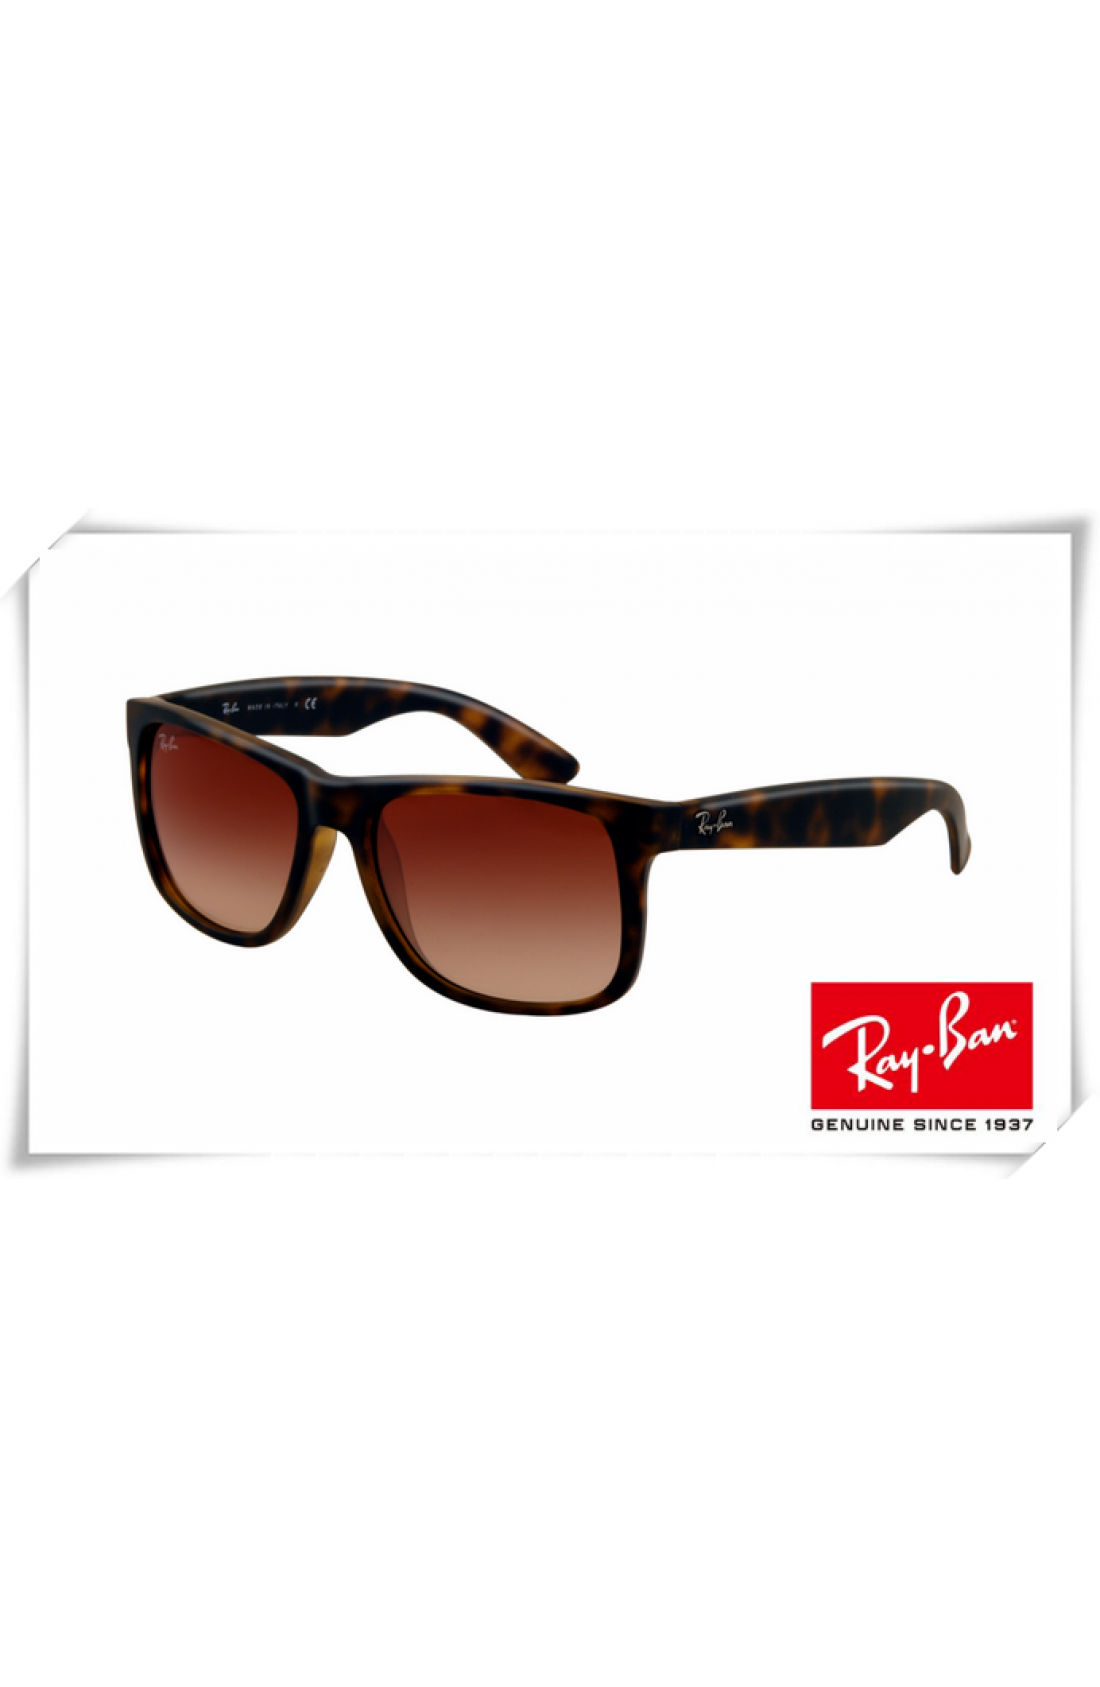 Cheap Ray Ban RB4165 Justin Sunglasses 